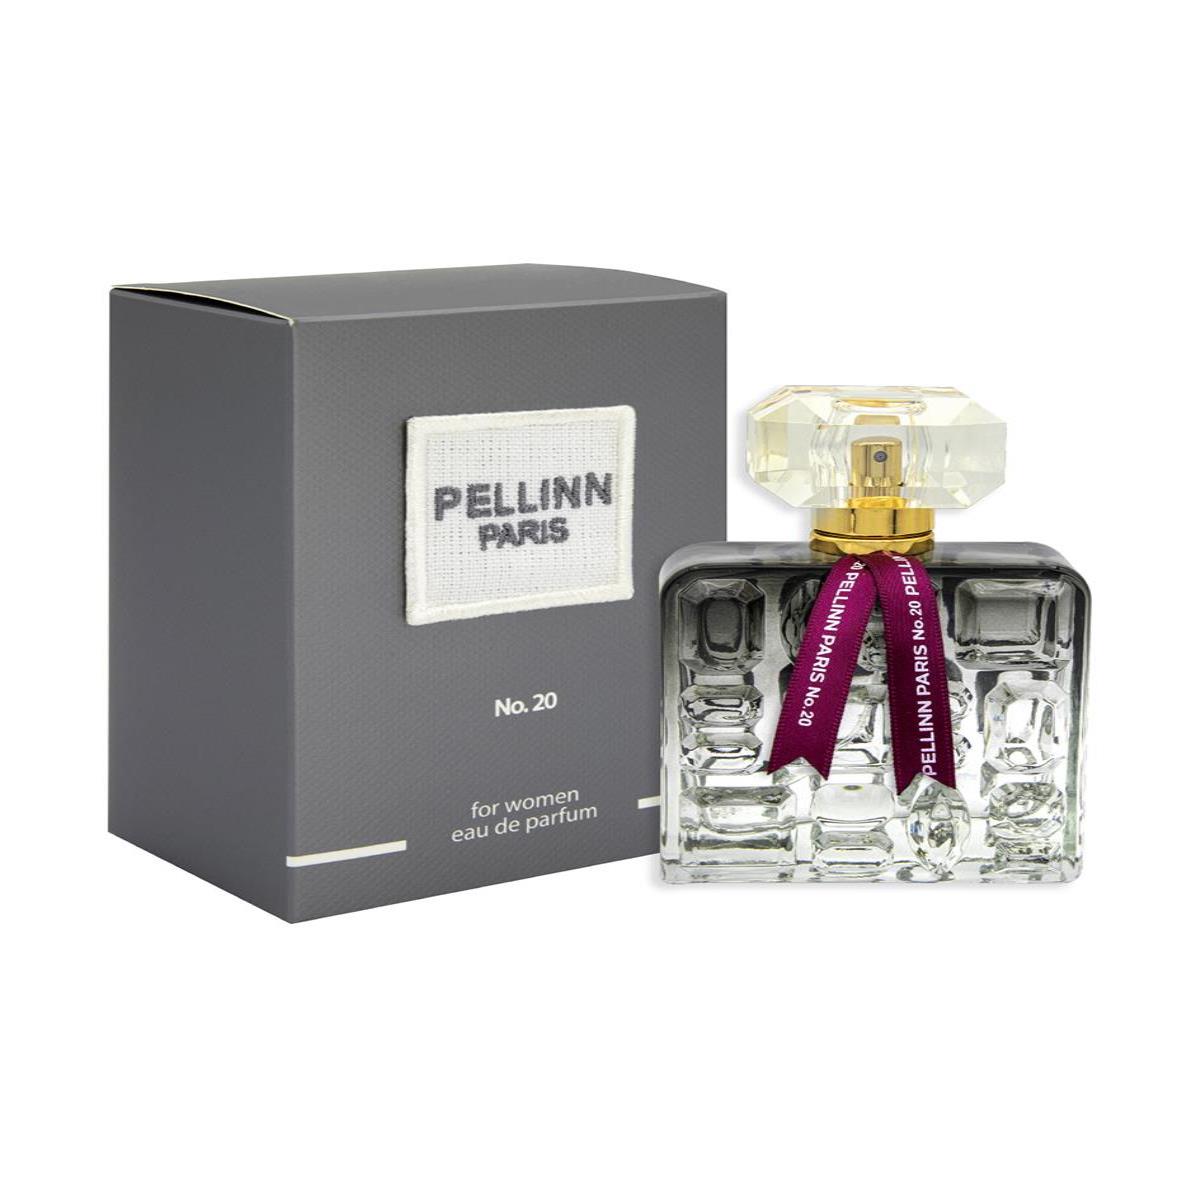 Pellinn Paris No.20 Oryantal Kadın EDP Parfüm 100 ml  Pellinn Paris Parfüm